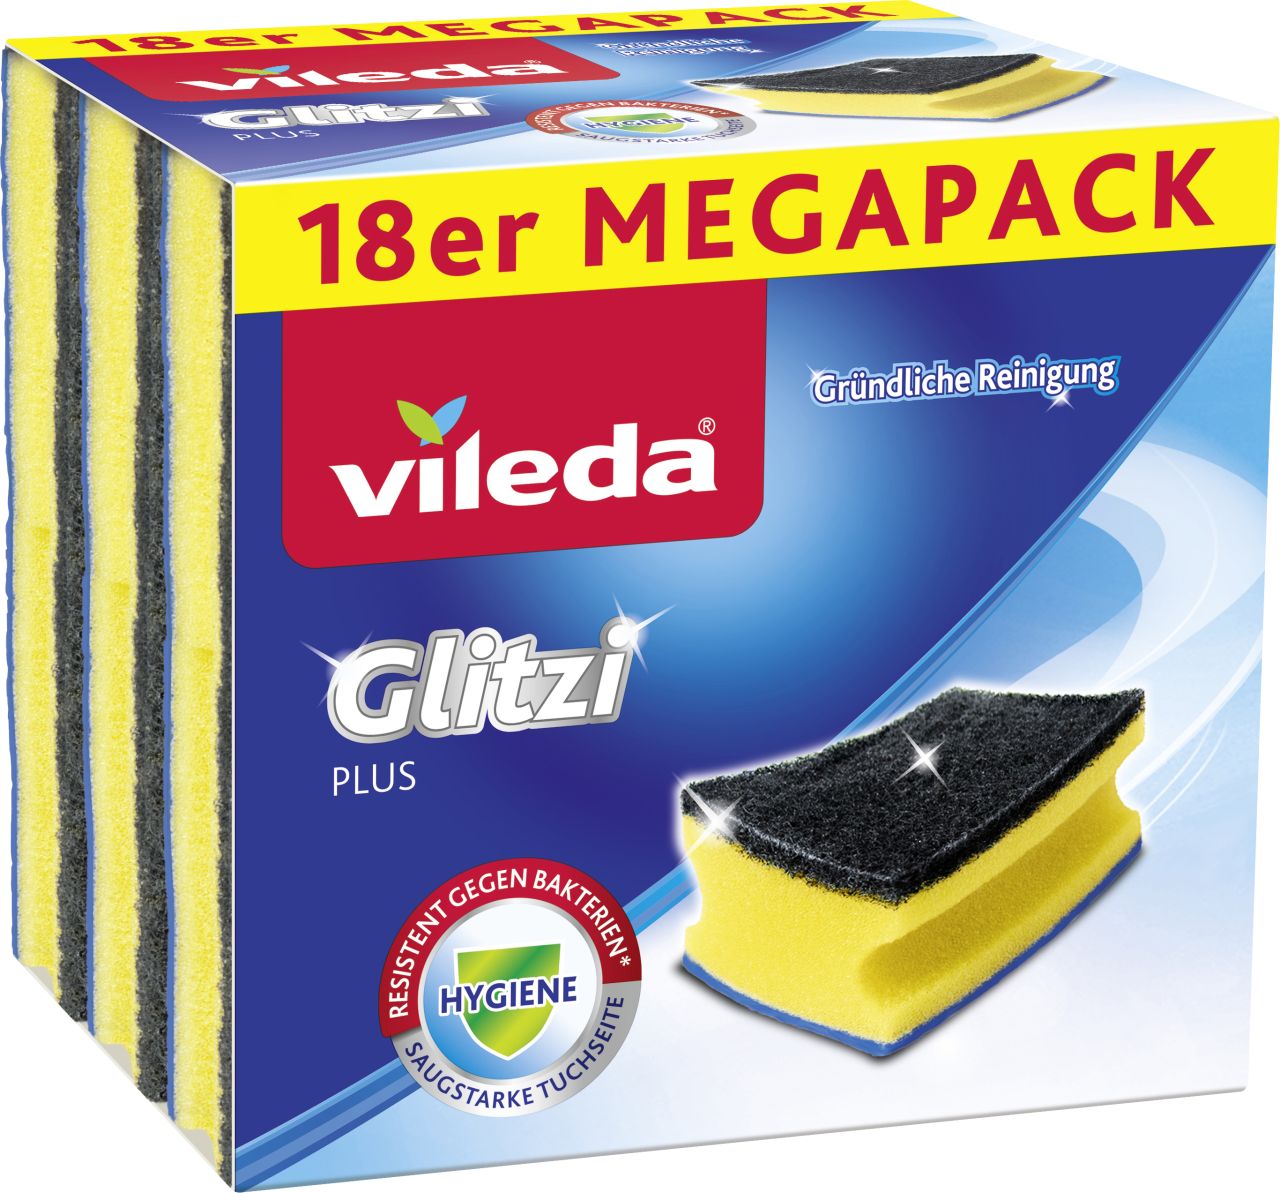 Vileda Topfreiniger Glitzi Plus Mega-Pack 18er von Vileda